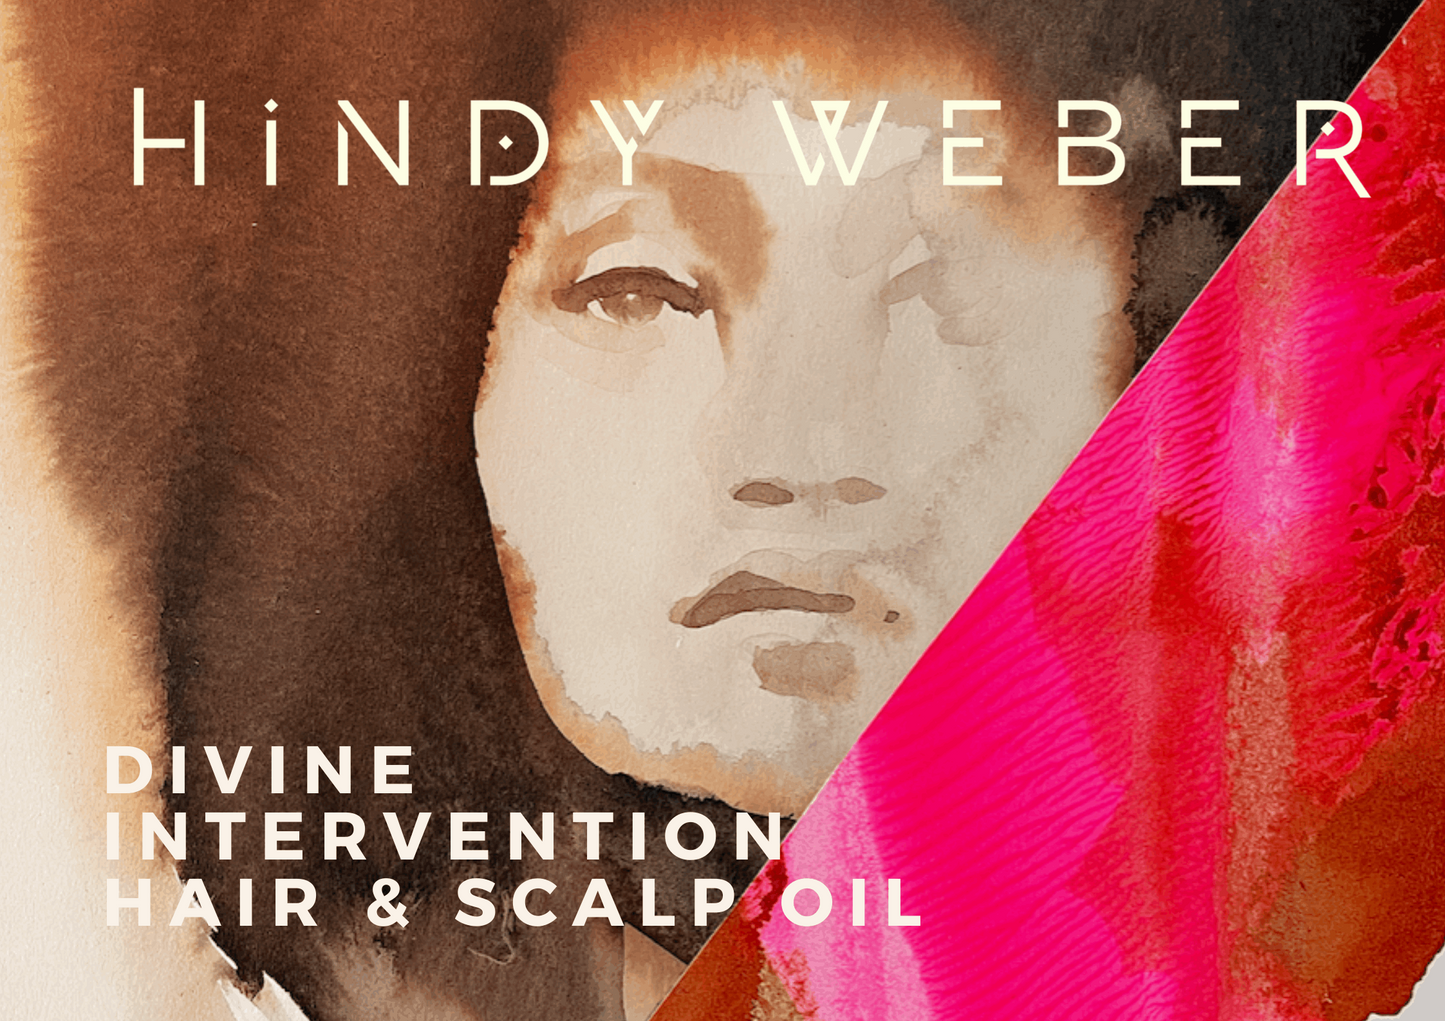 Divine Intervention Hair & Scalp Oil